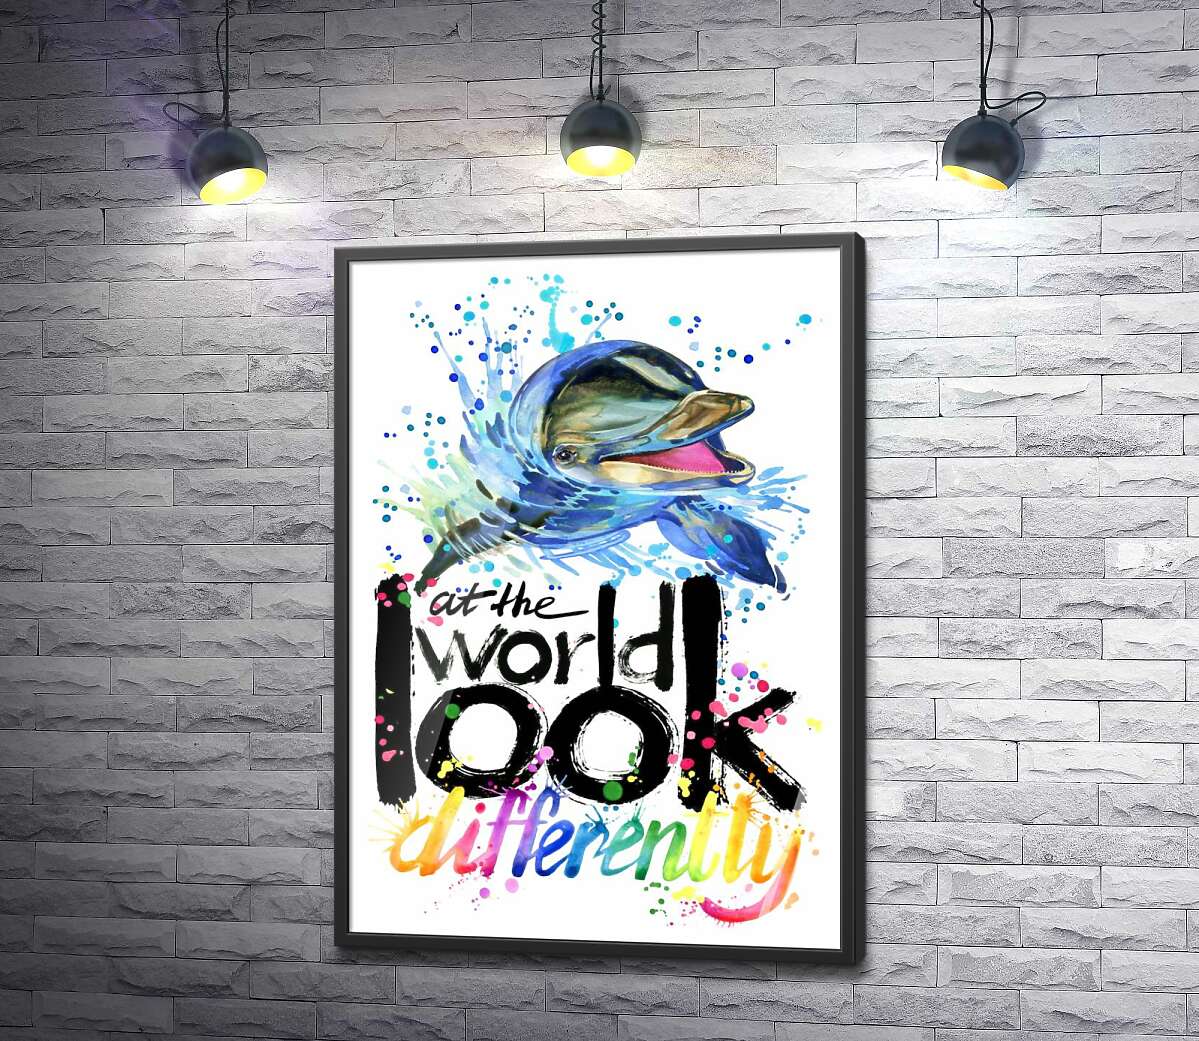 постер Веселый дельфин с надписью "look at the world differently"